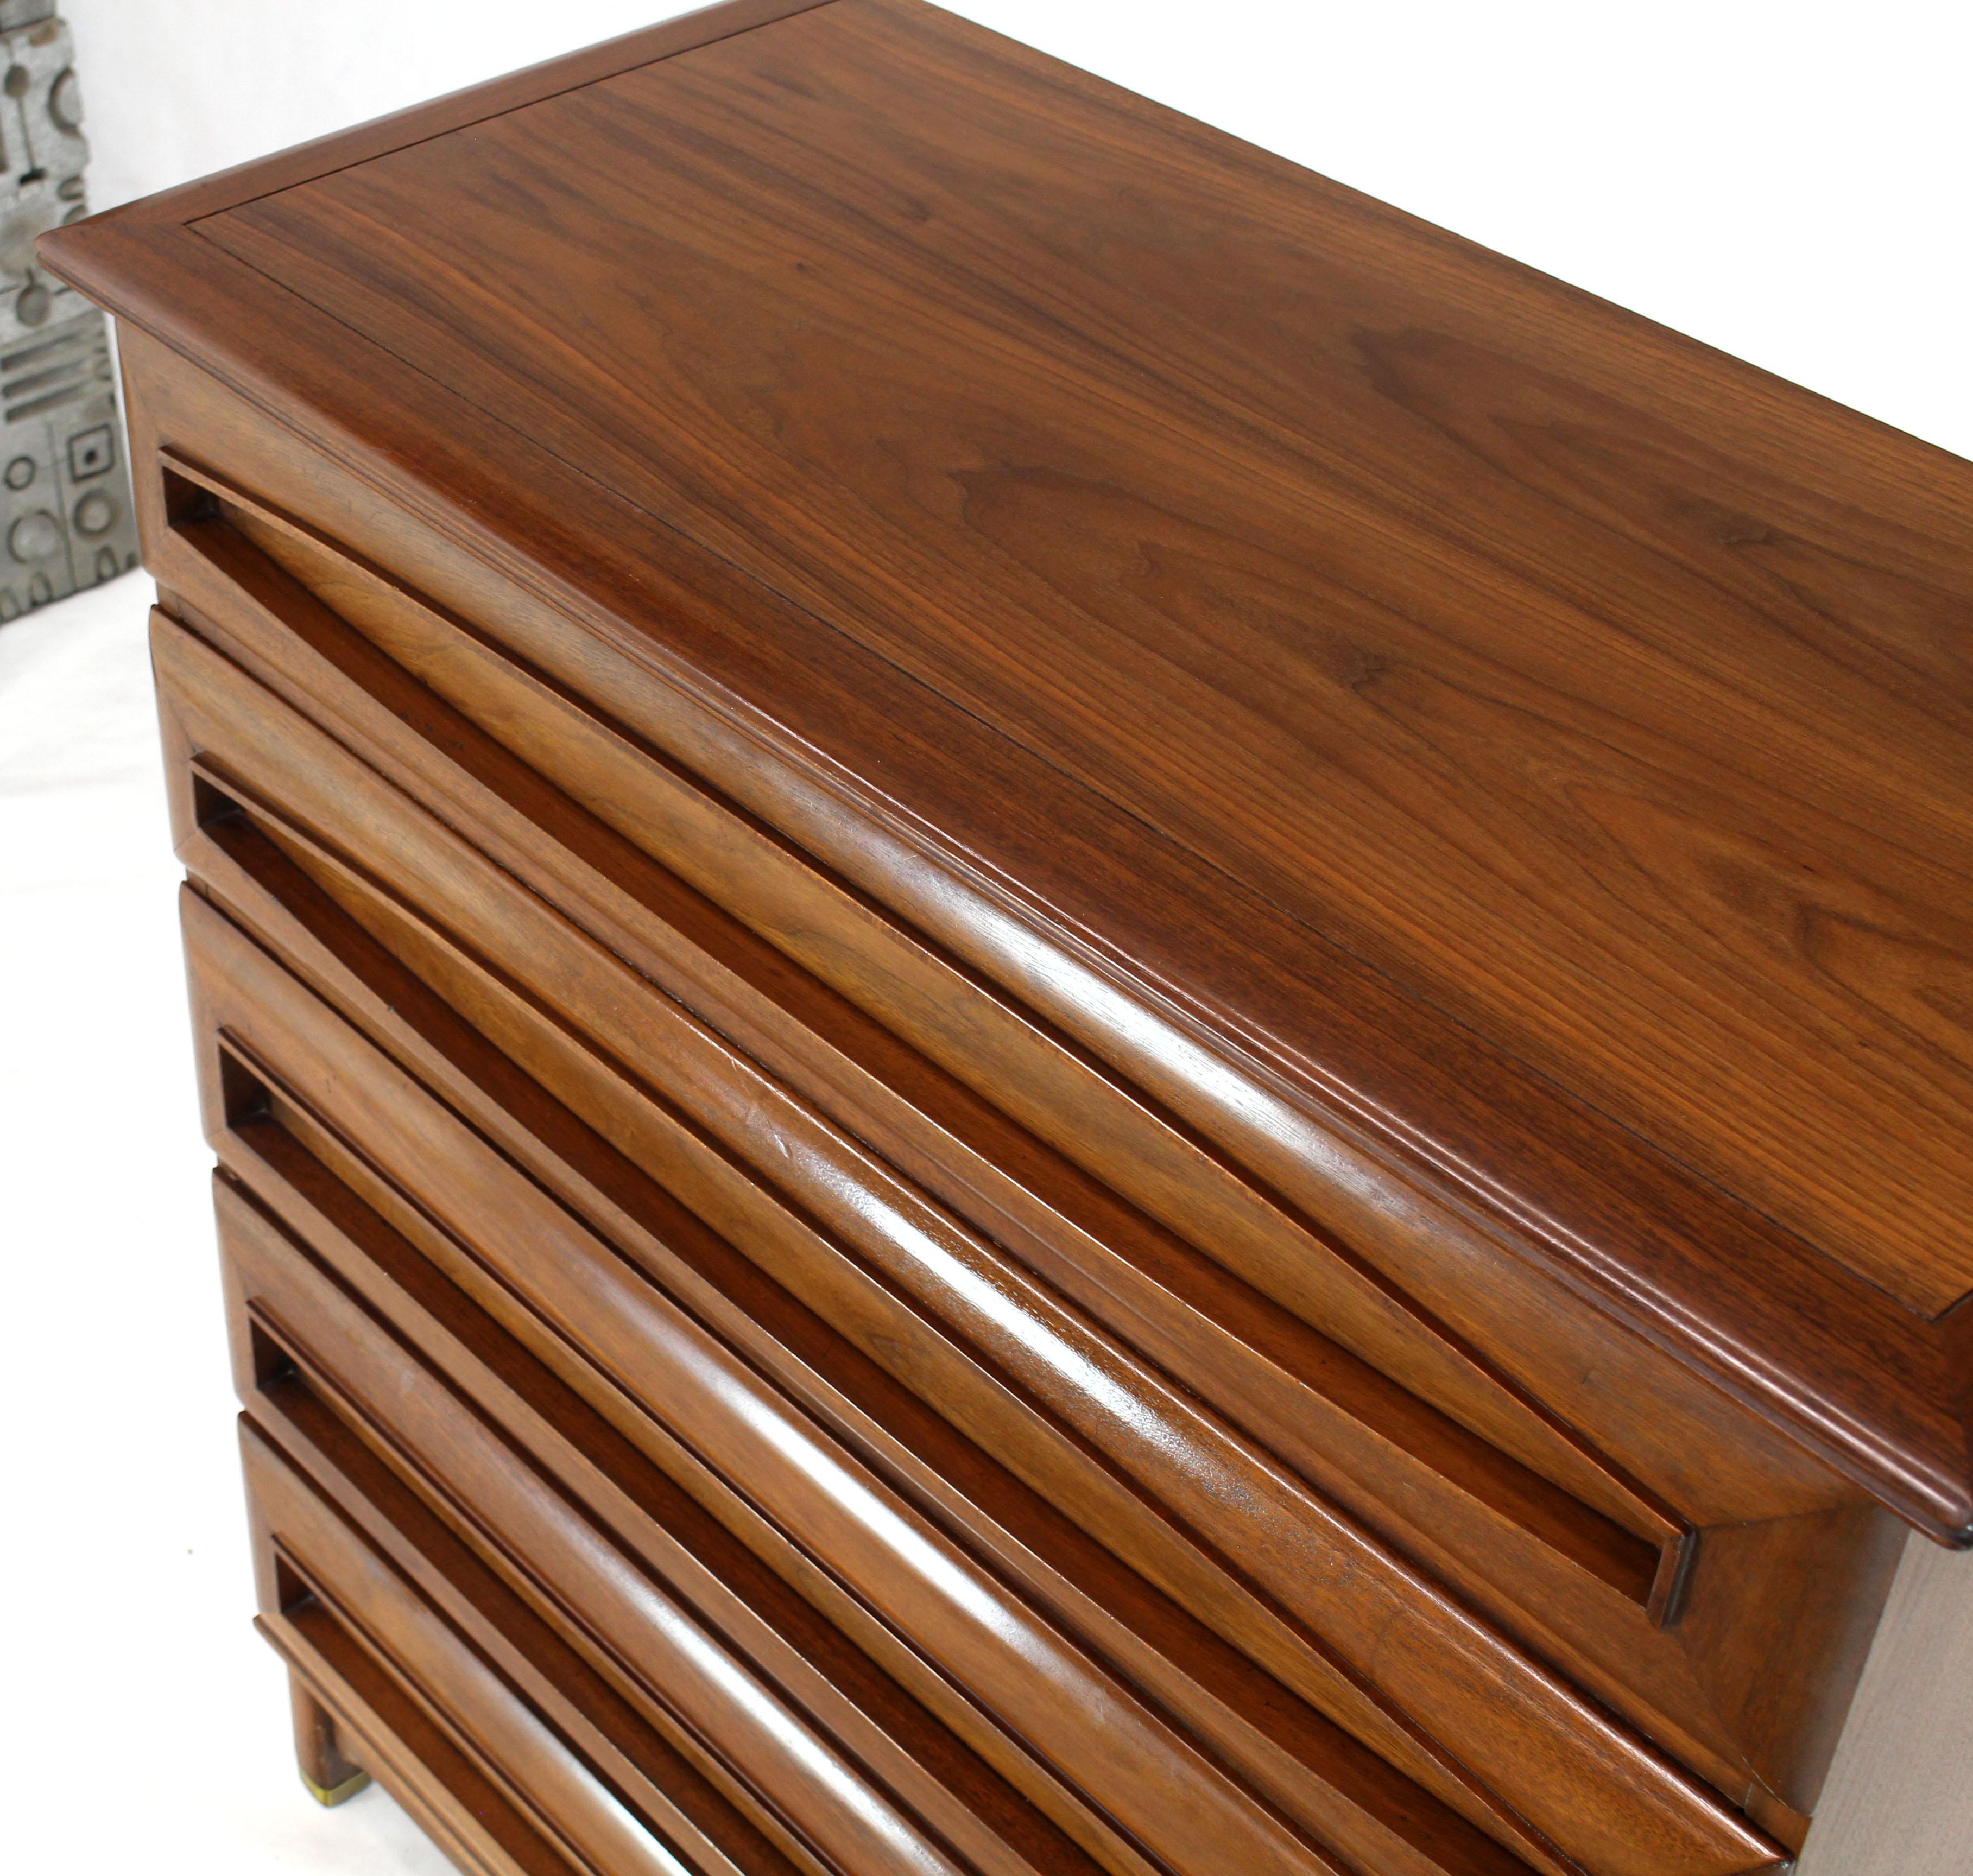 Sculptural Thick Carved Solid Walnut Panels Design 5-Drawer High Chest Dresser For Sale 2